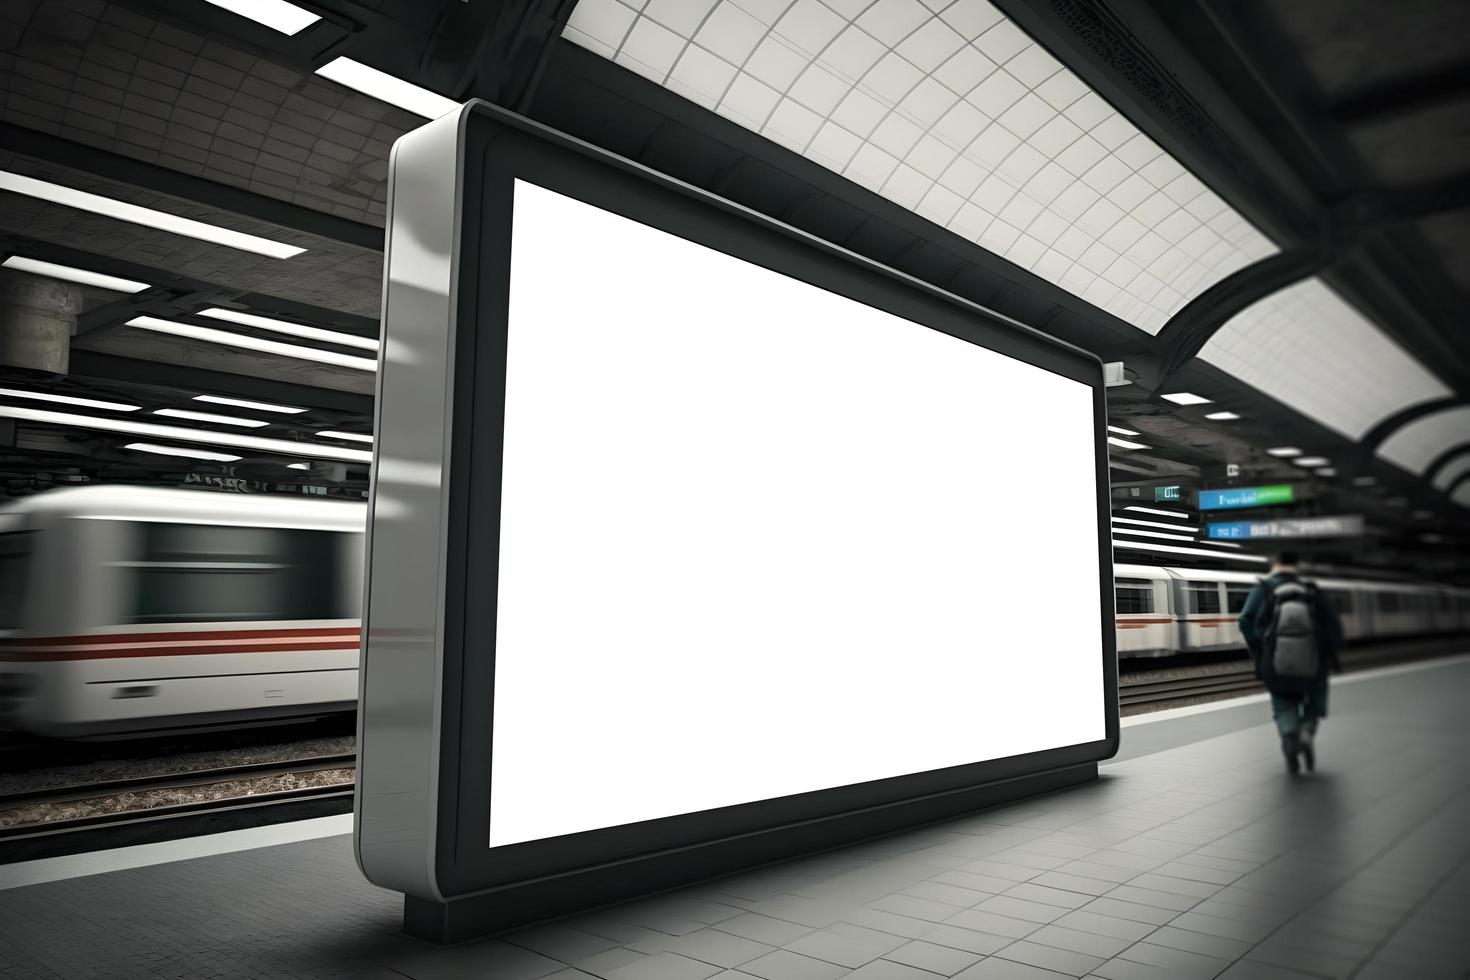 vide horizontal panneau d'affichage à souterrain métro , métro gare, La publicité panneau d'affichage souterrain photo